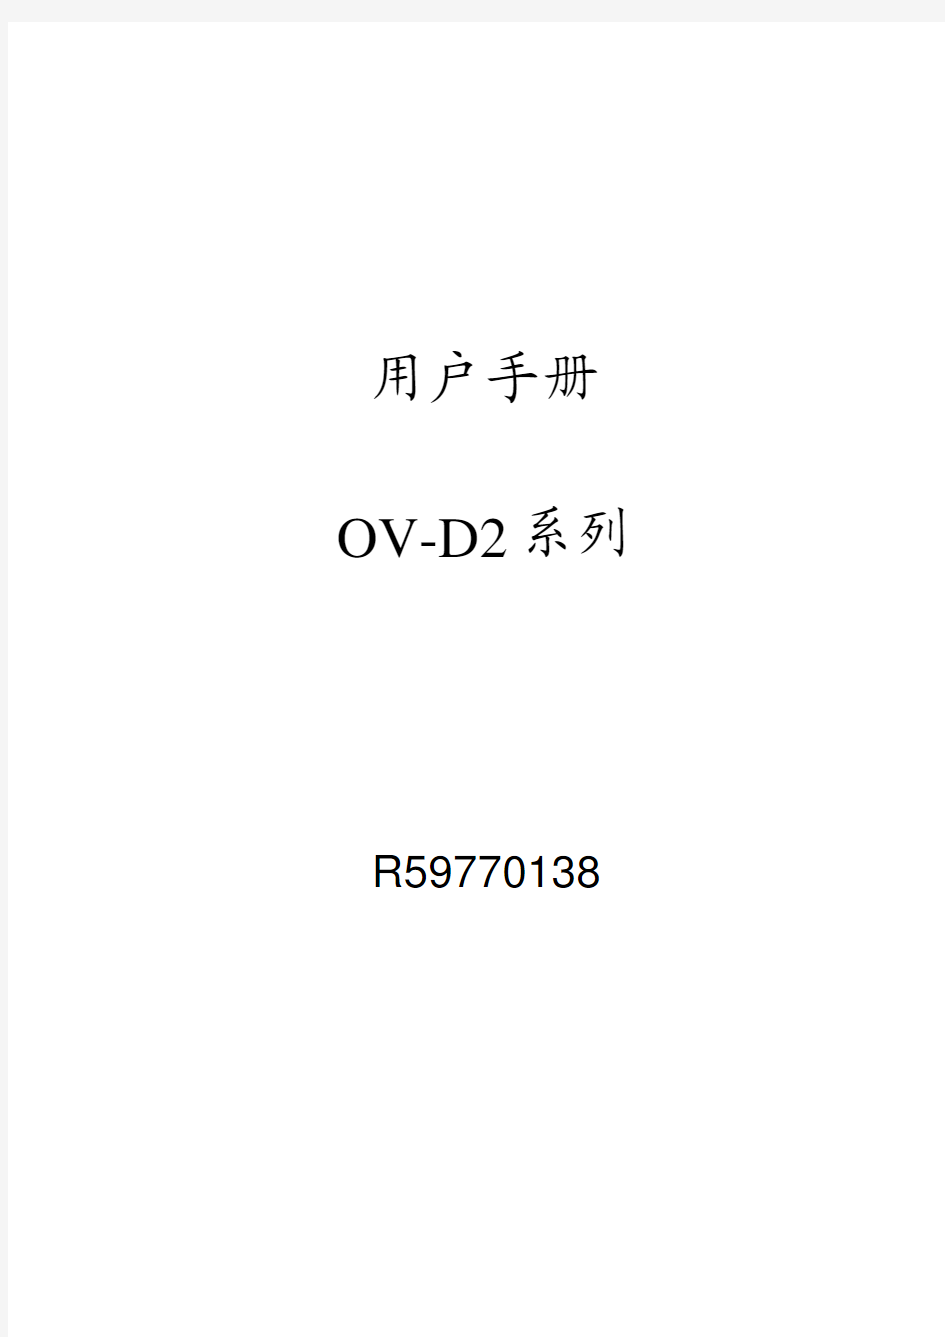 巴可一体化背投箱OV D2用户手册